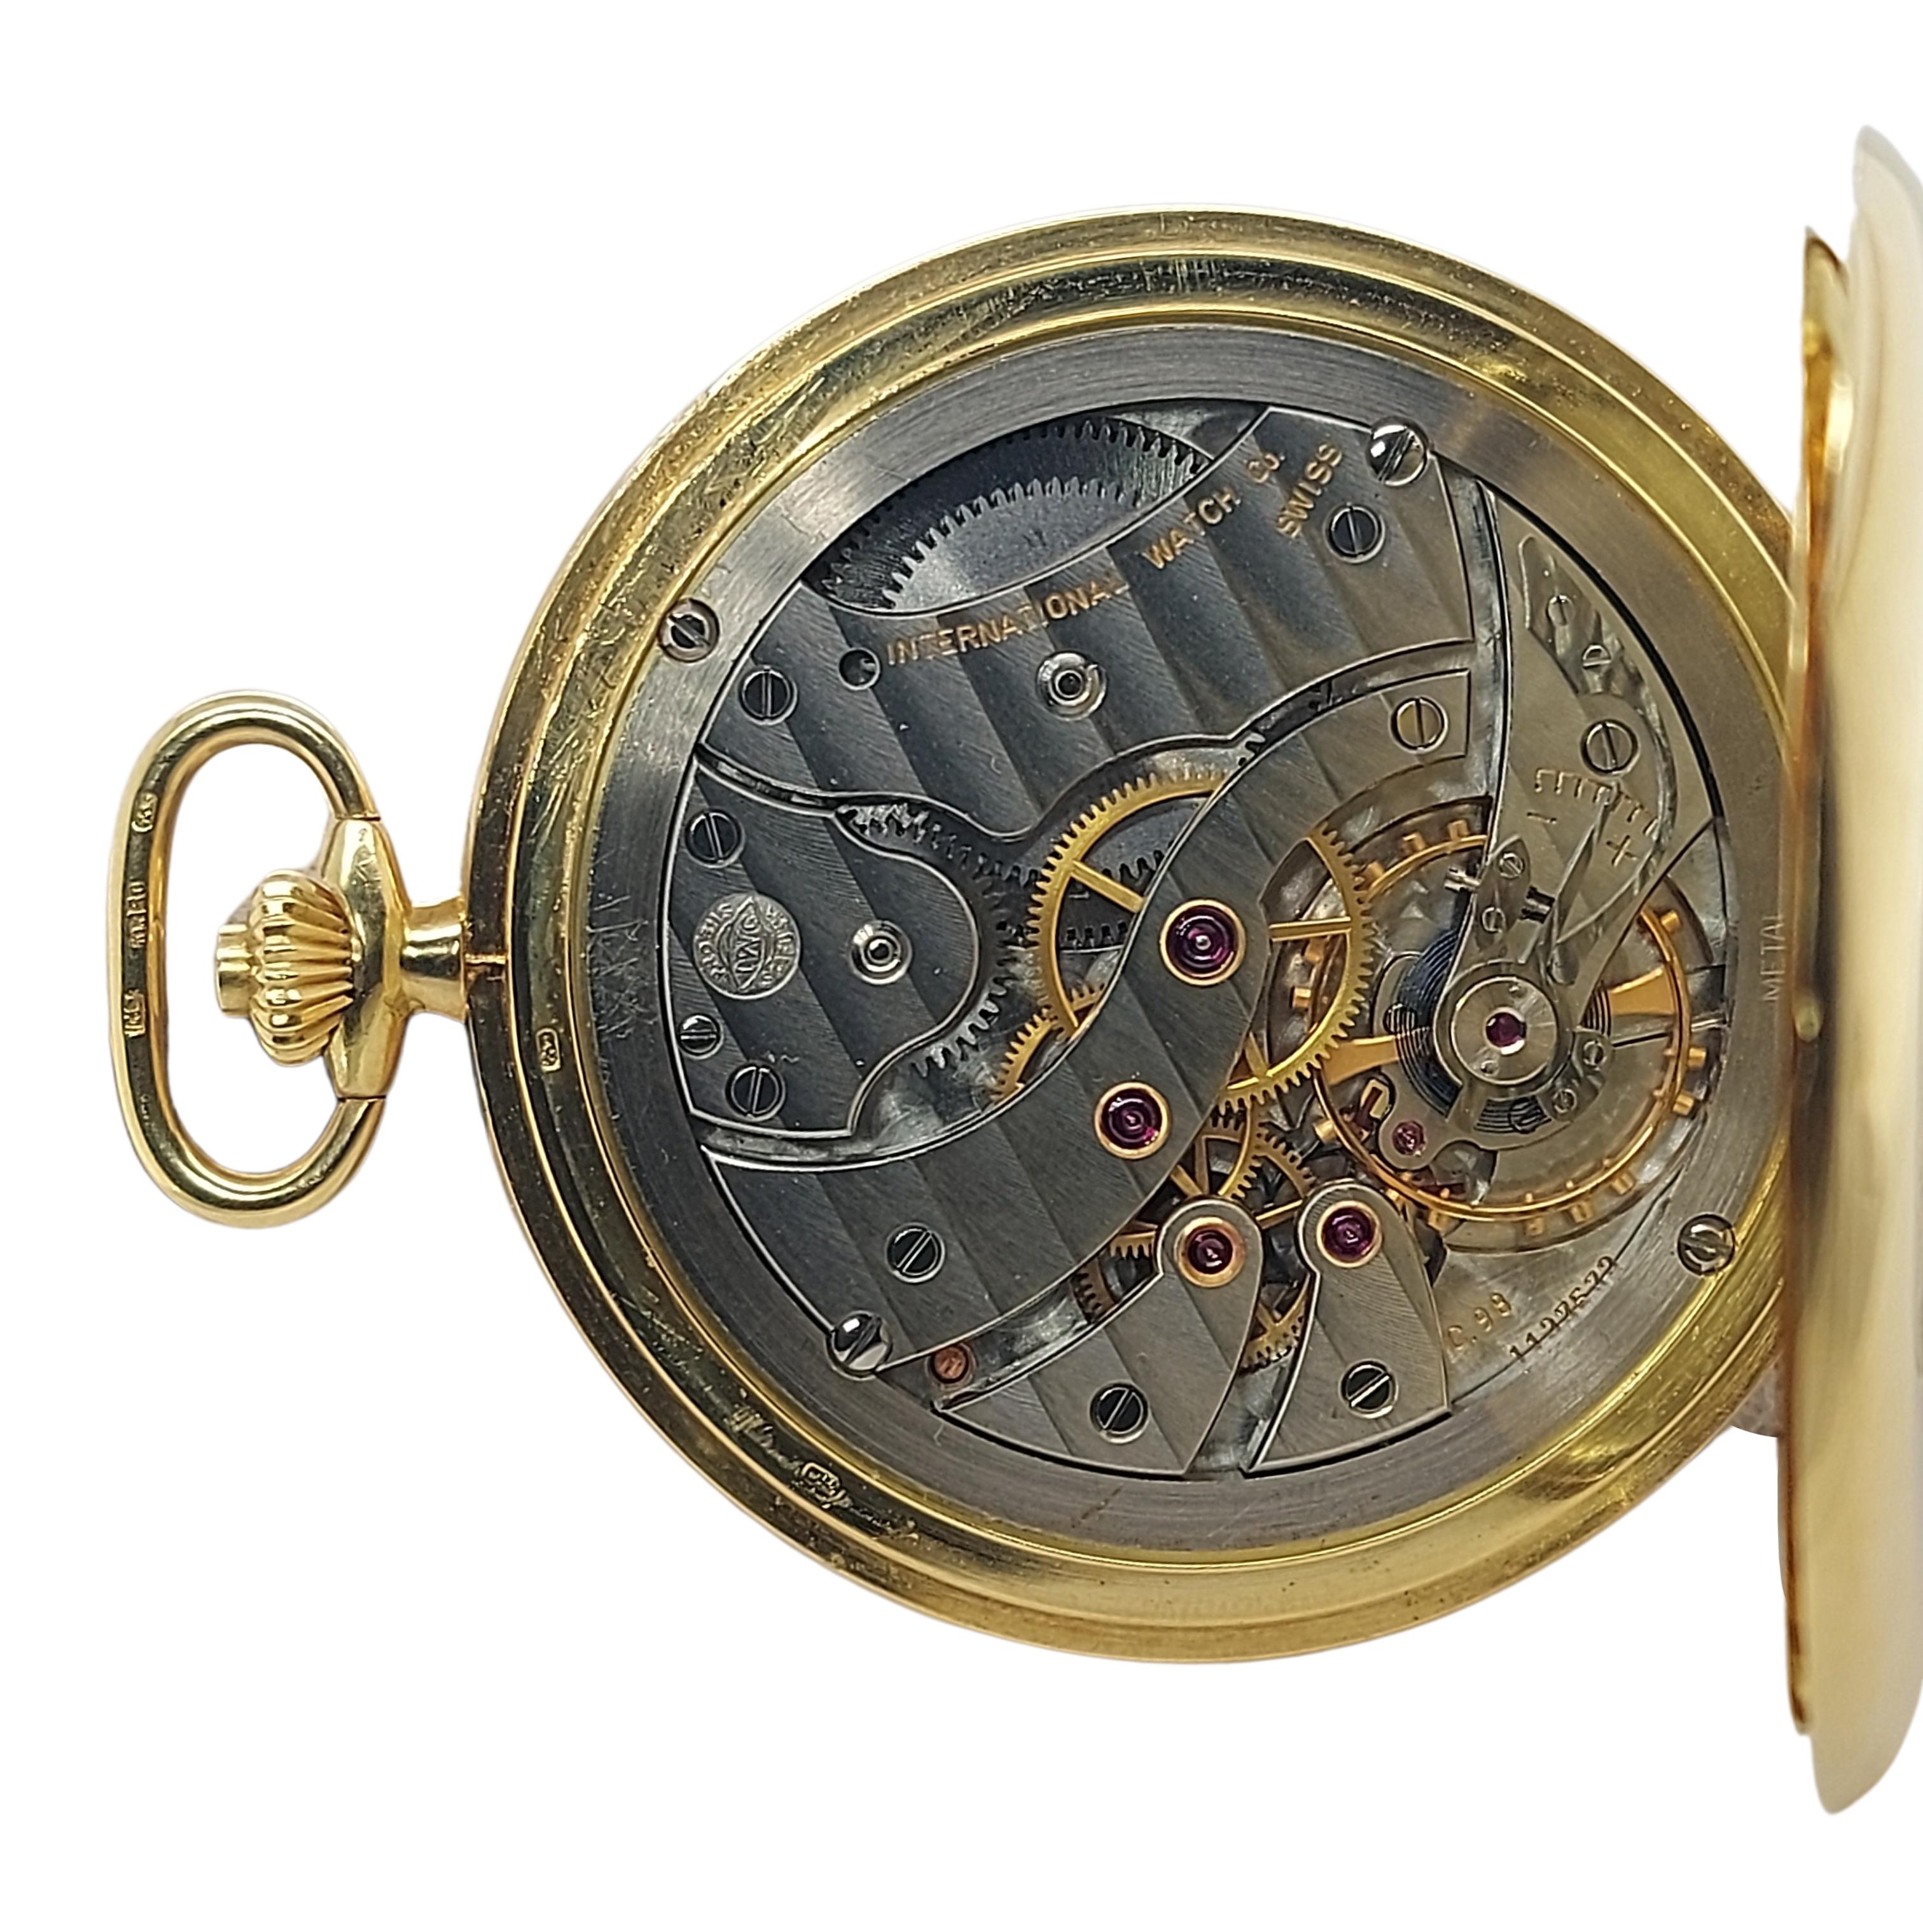 IWC Schaffhausen Asprey Savonette/Hunting Case Pocket Watch 18 Kt Gold For Sale 1